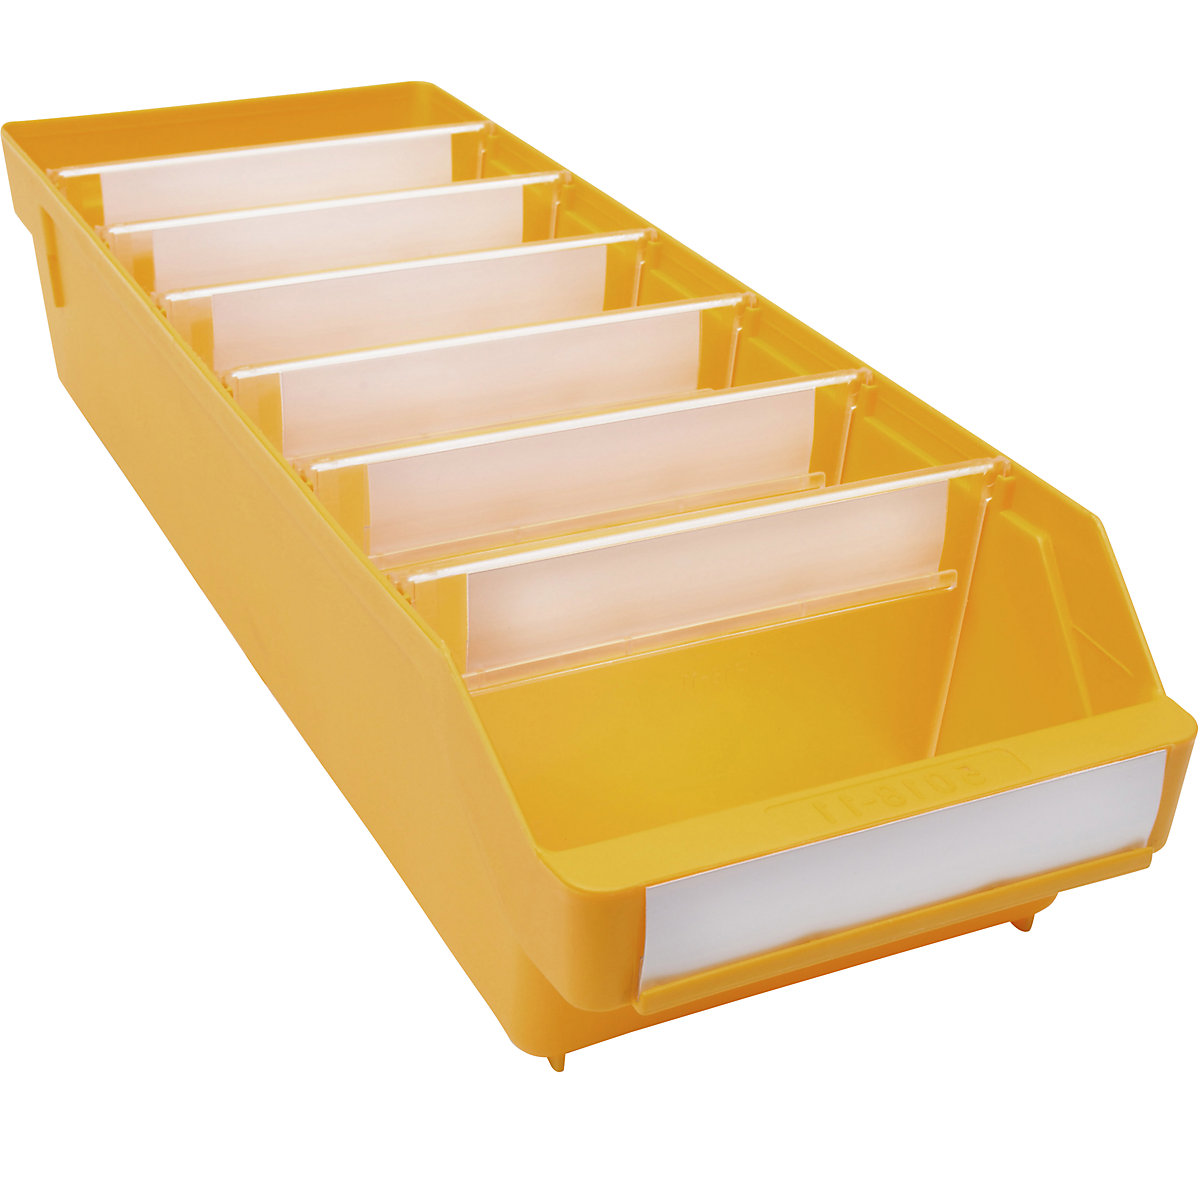 Regalkasten aus hochschlagfestem Polypropylen STEMO, gelb, LxBxH 500 x 180 x 110 mm, VE 20 Stk-6